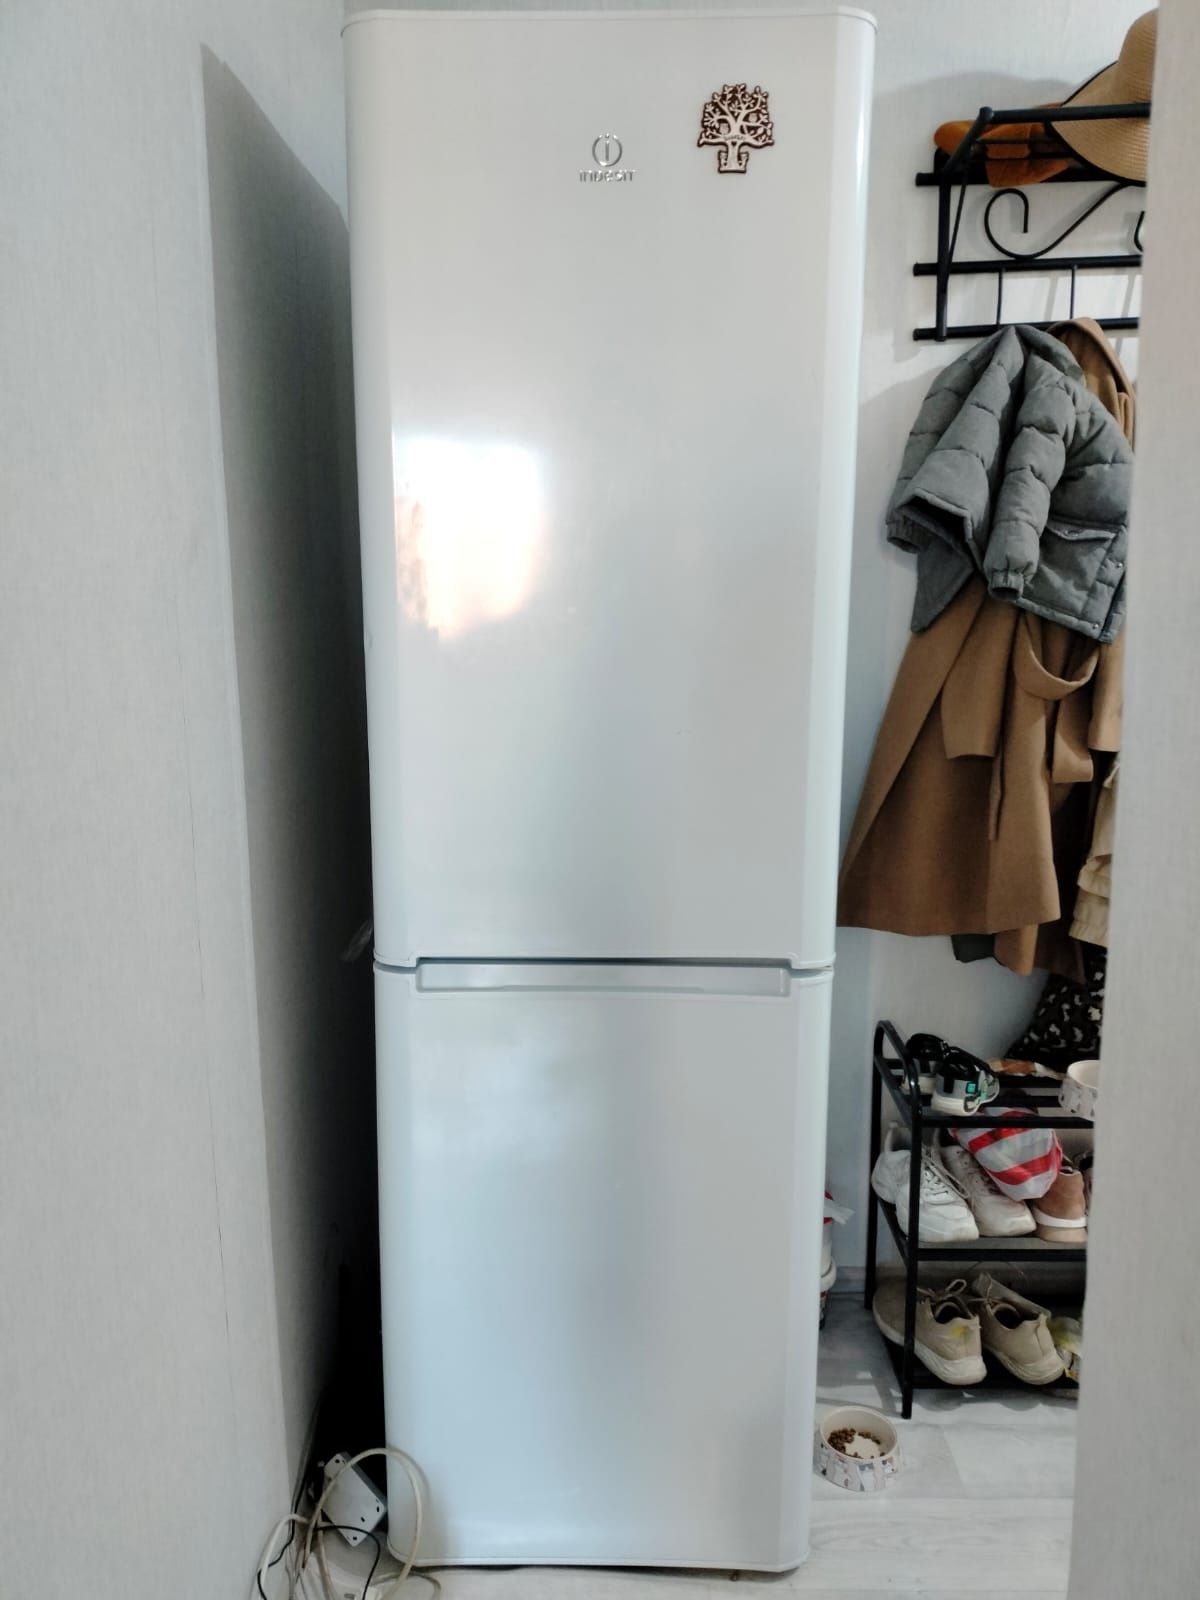 Продам 2-х камерный холодильник Индезит